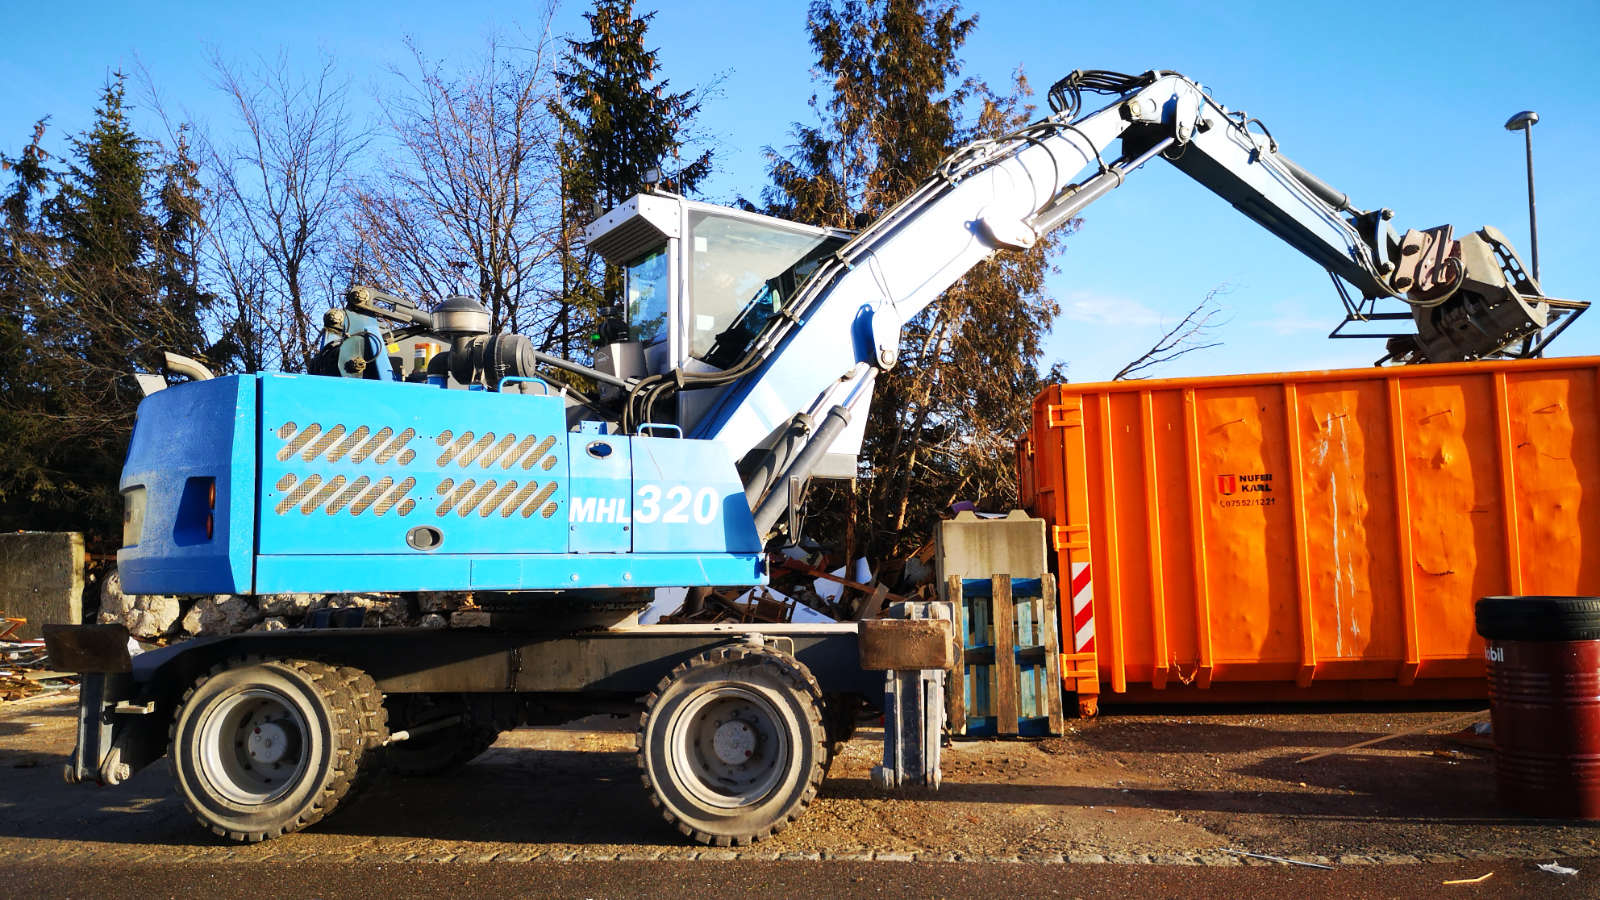 Nufer Gmbh - Containerdienst • Recycling • Wertstoffhof Abbrucharbeiten • Erdbau/Tiefbau